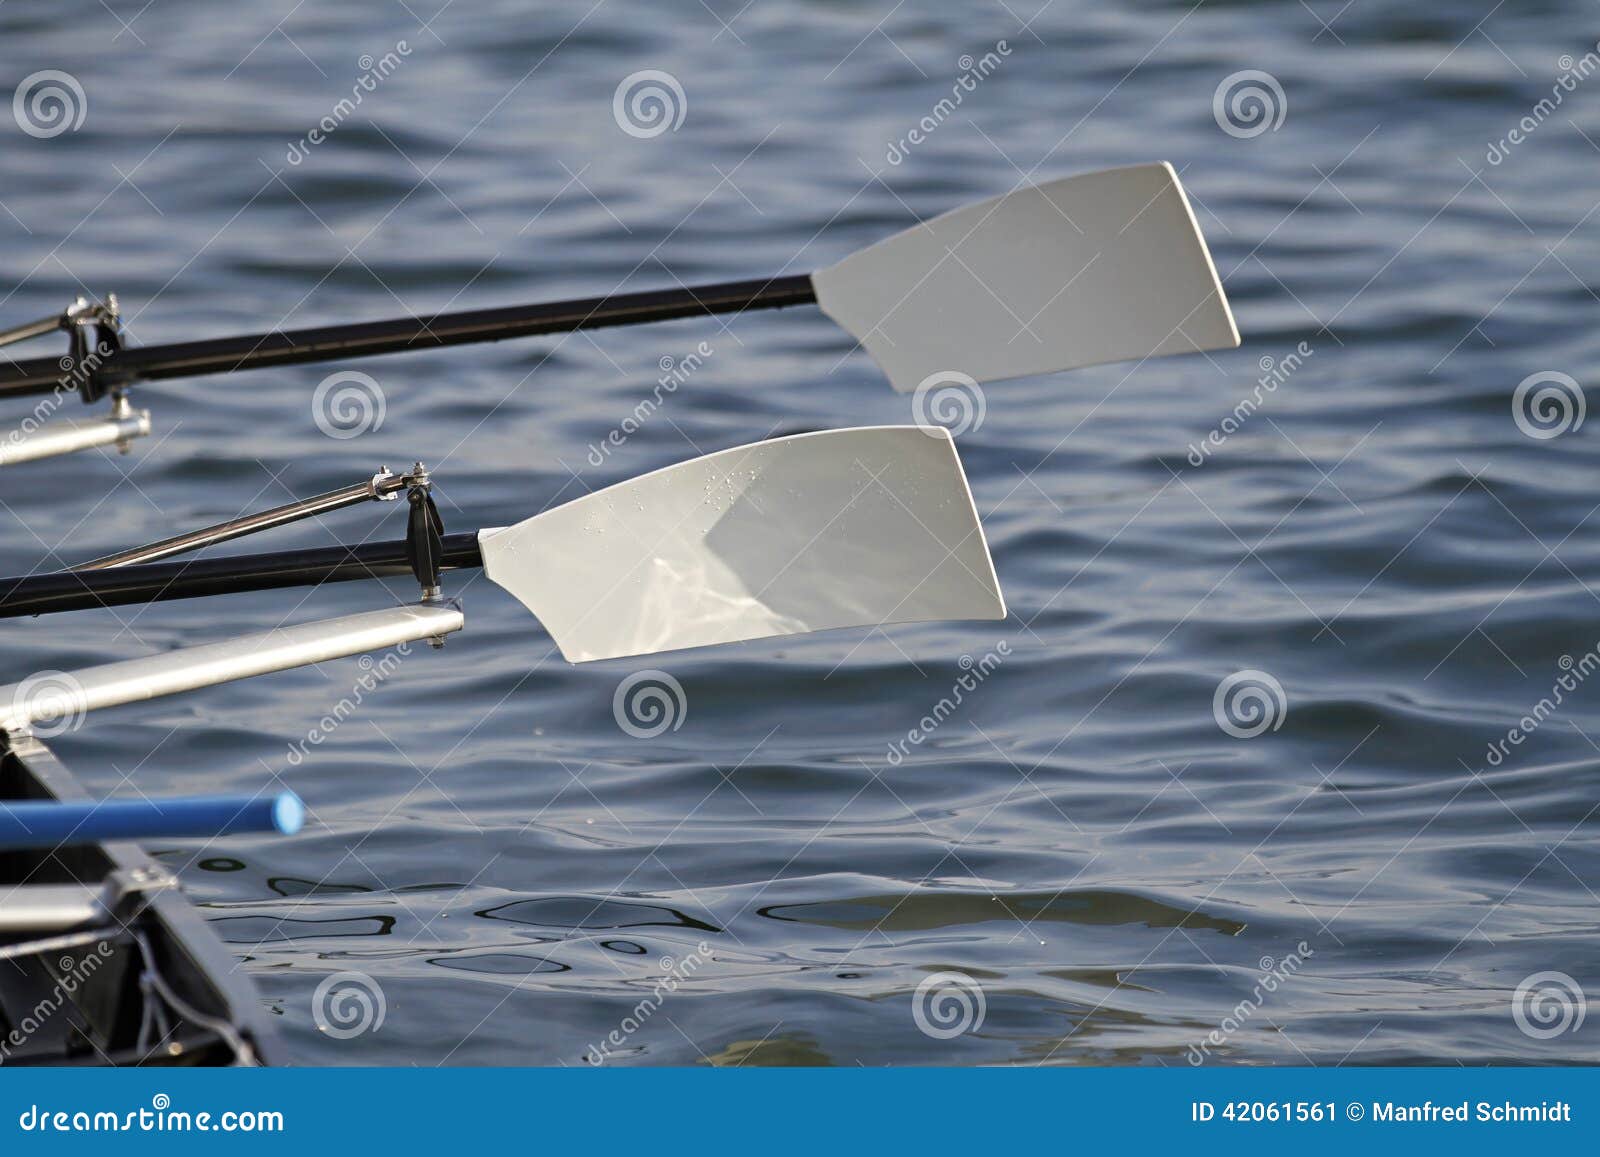 rowing oars